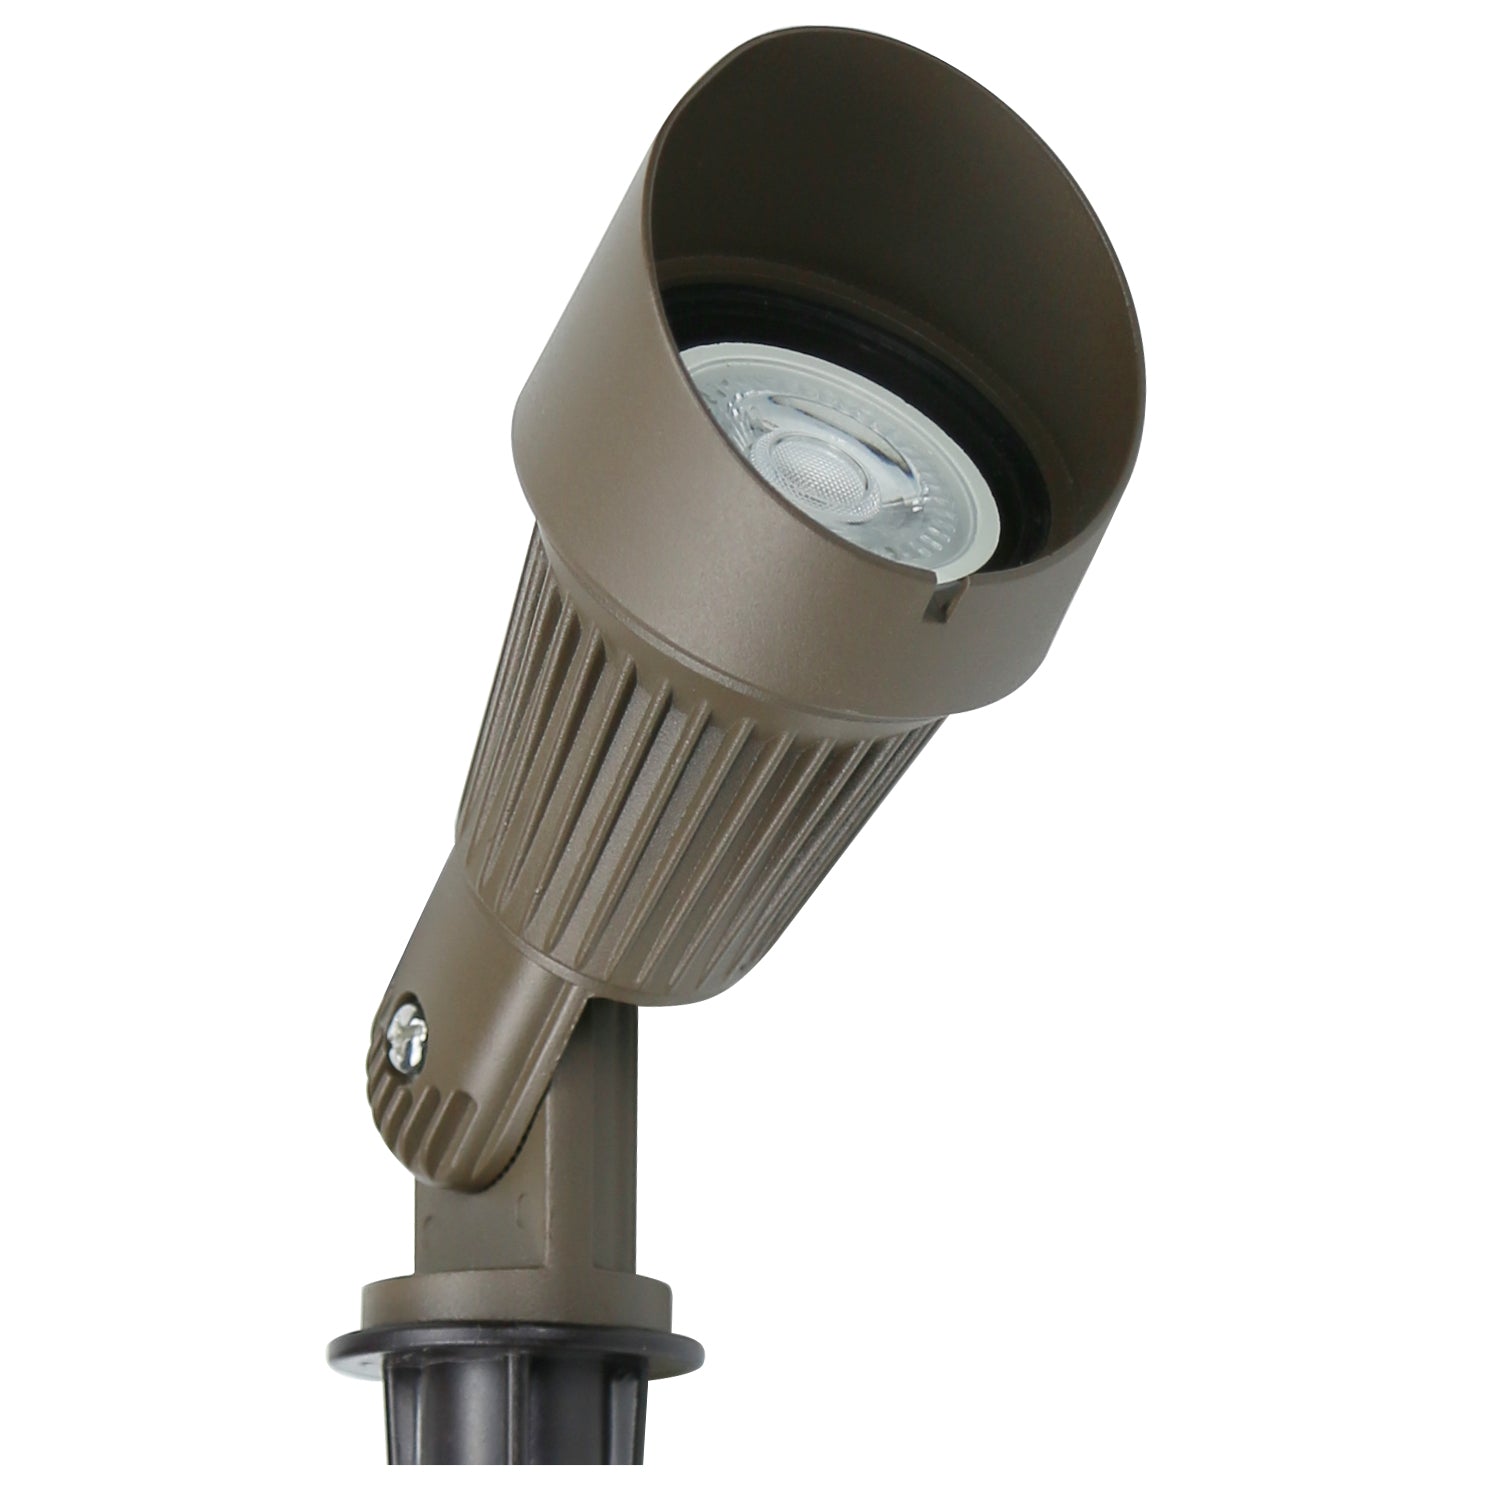 Lumina Lighting® 5W Landscape Spotlights | Low Voltage Landscape Lighting Lights - 12V 3000K | Replaceable MR16 LED Bulb (Bronze, 2-Pack)